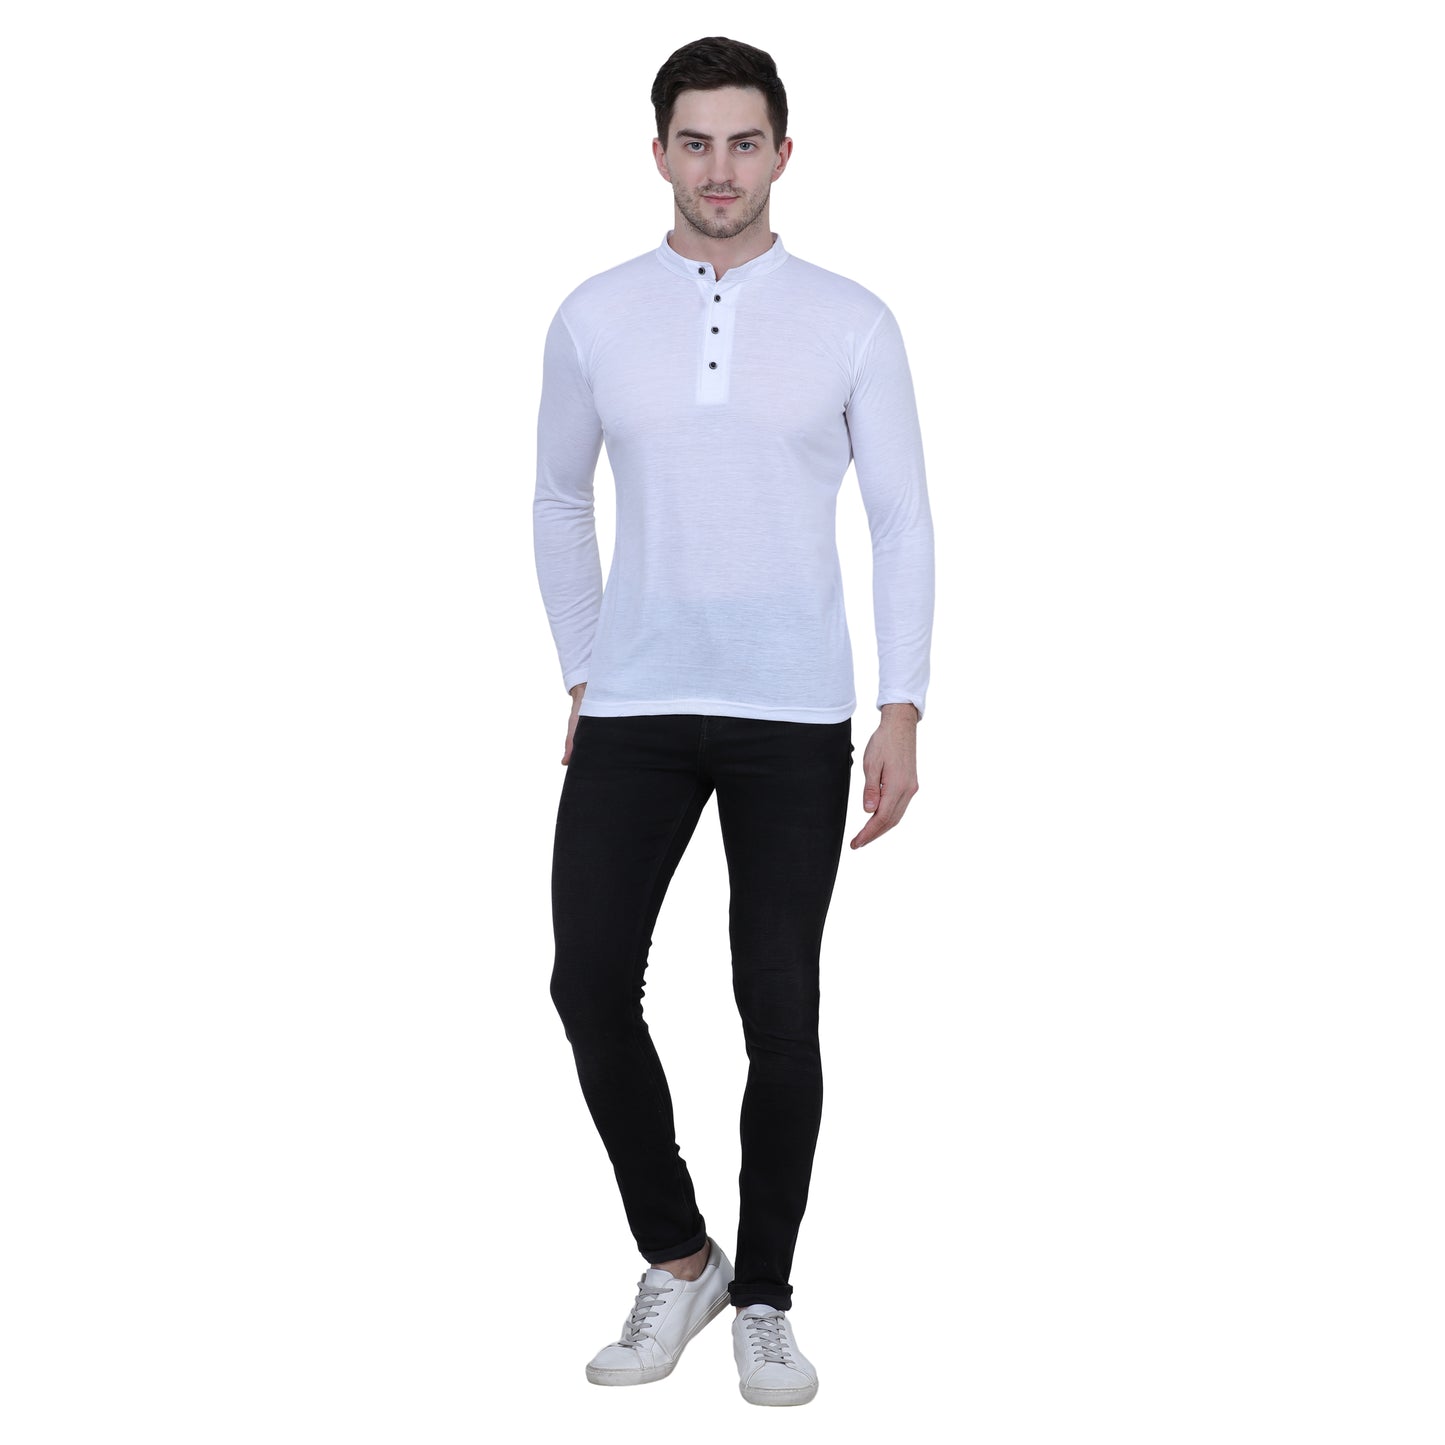 Cotton Blend Full Sleeves Trendy Tshirt For Men's (Pack of 3)